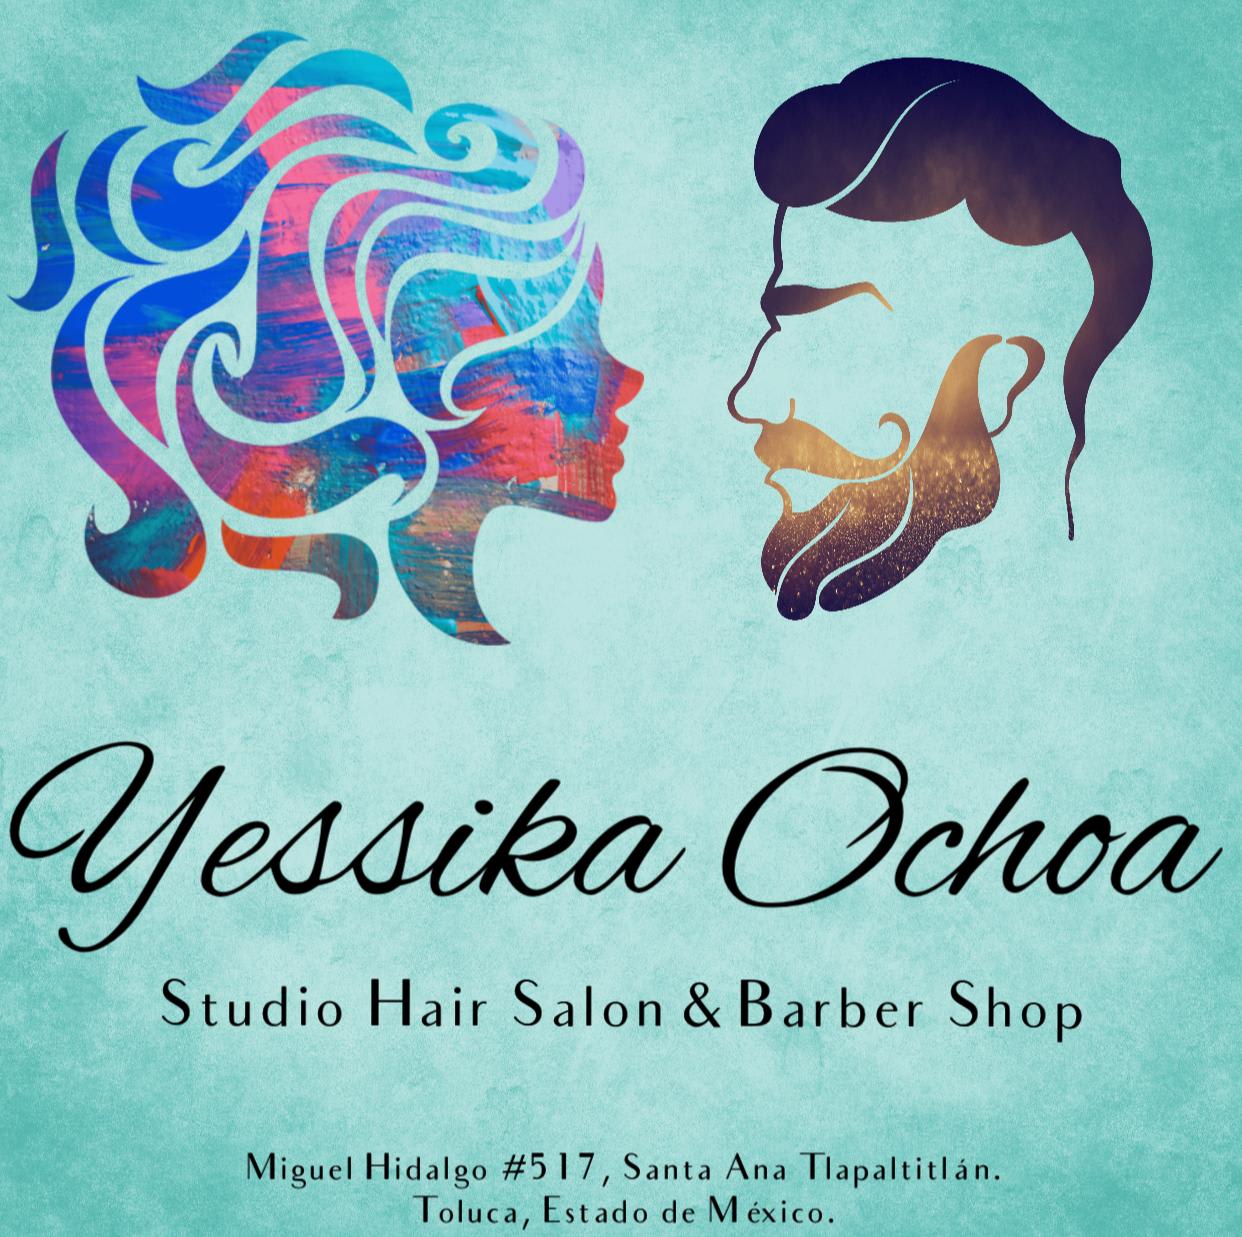 Yessika Ochoa Studio Salón y Barber Shop